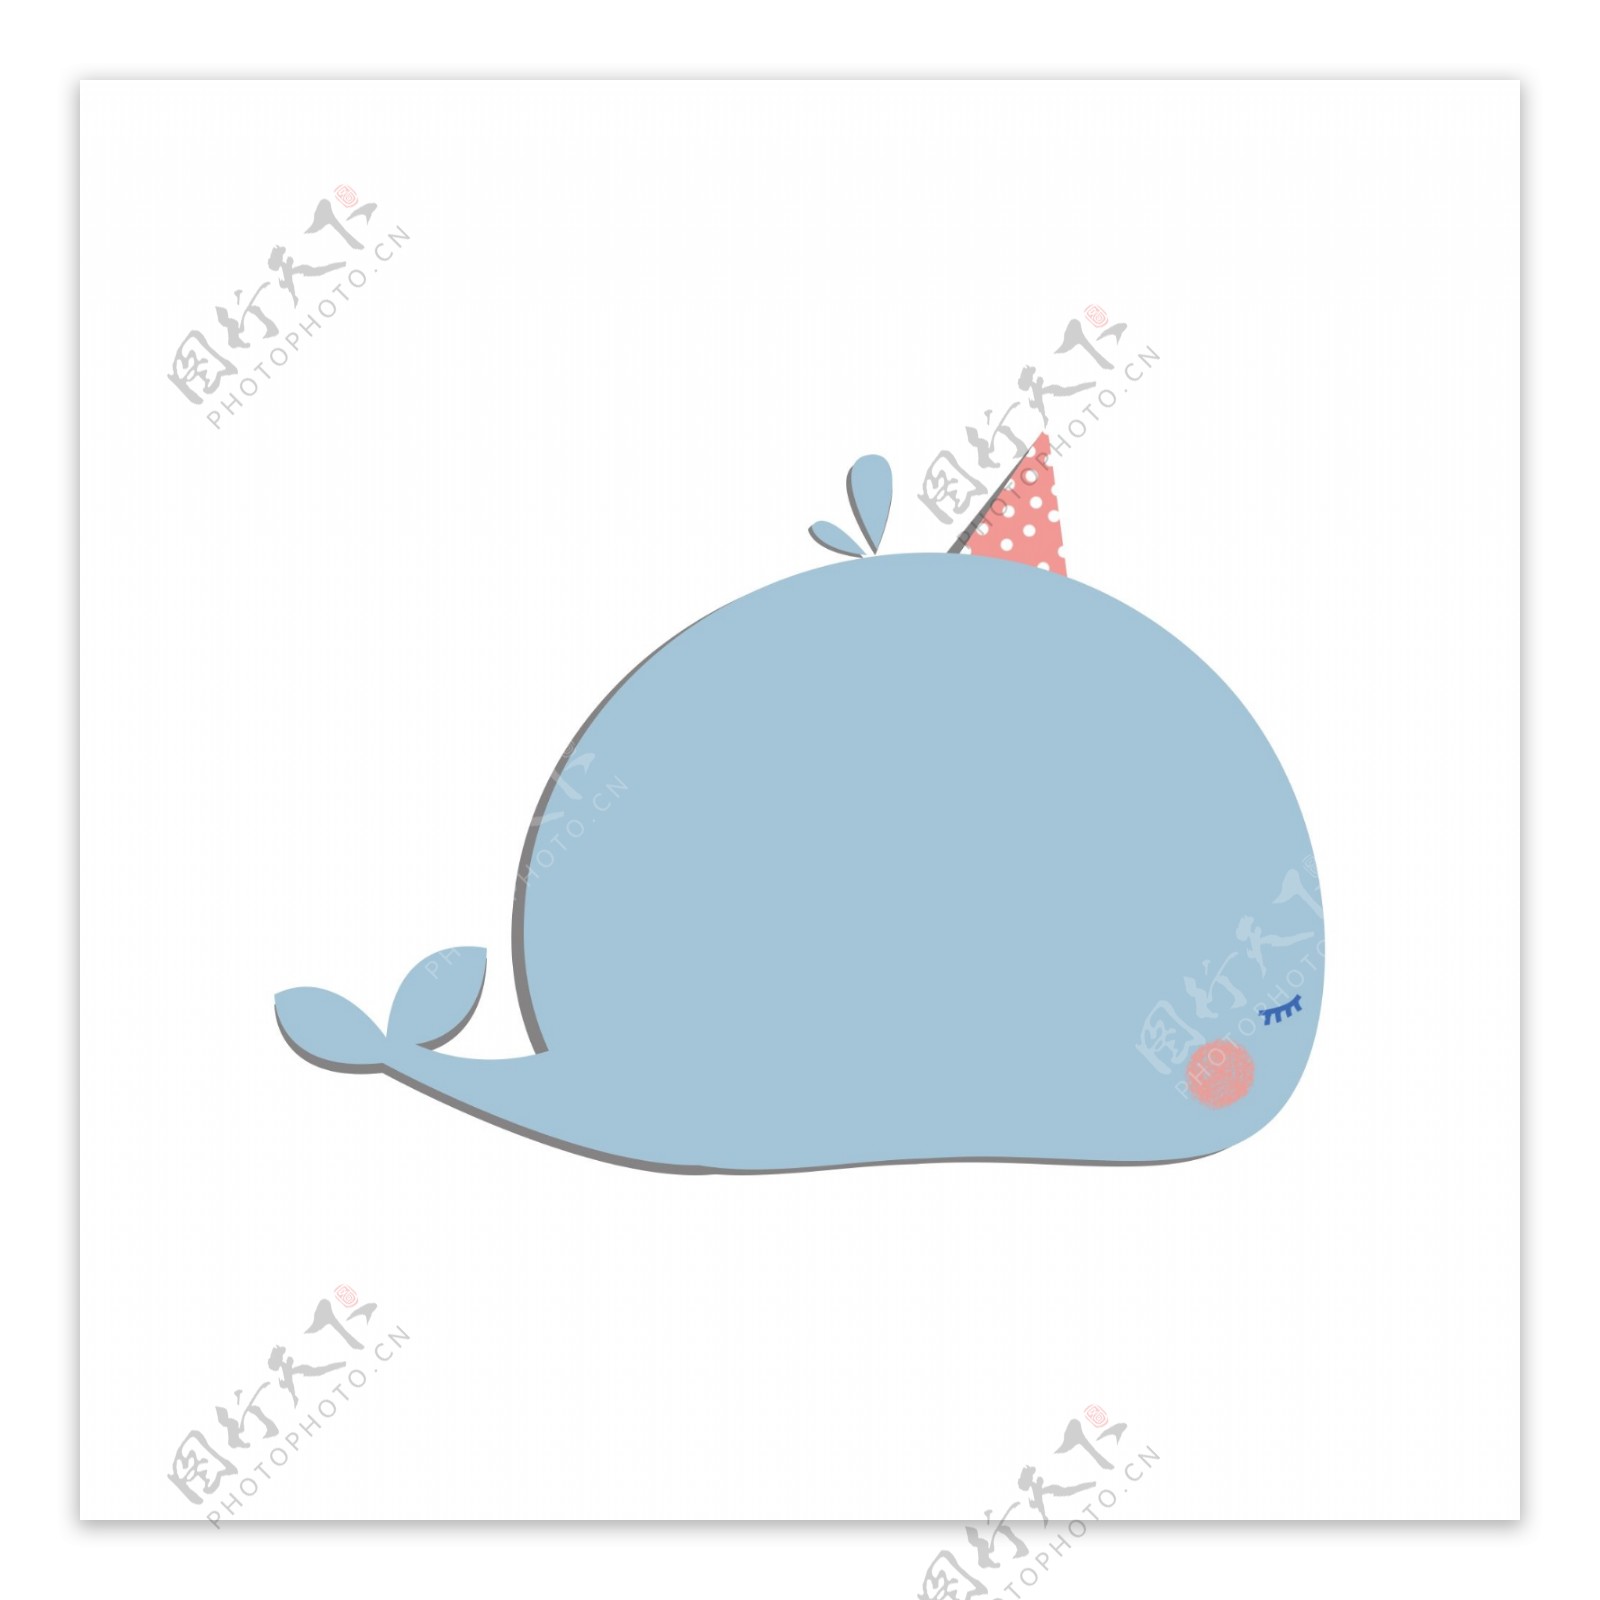 蓝色鲸鱼动物可爱便签气泡框